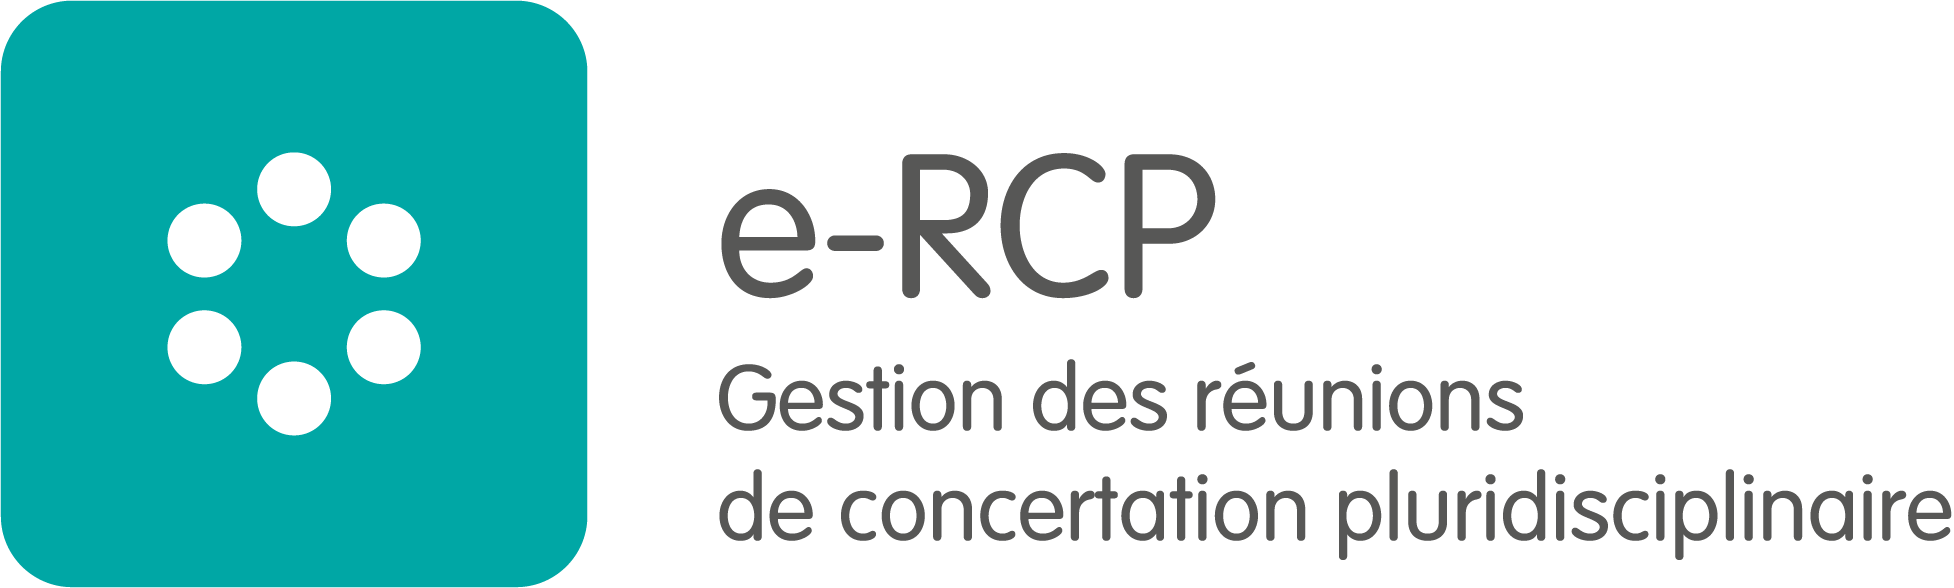 Logo e-RCP